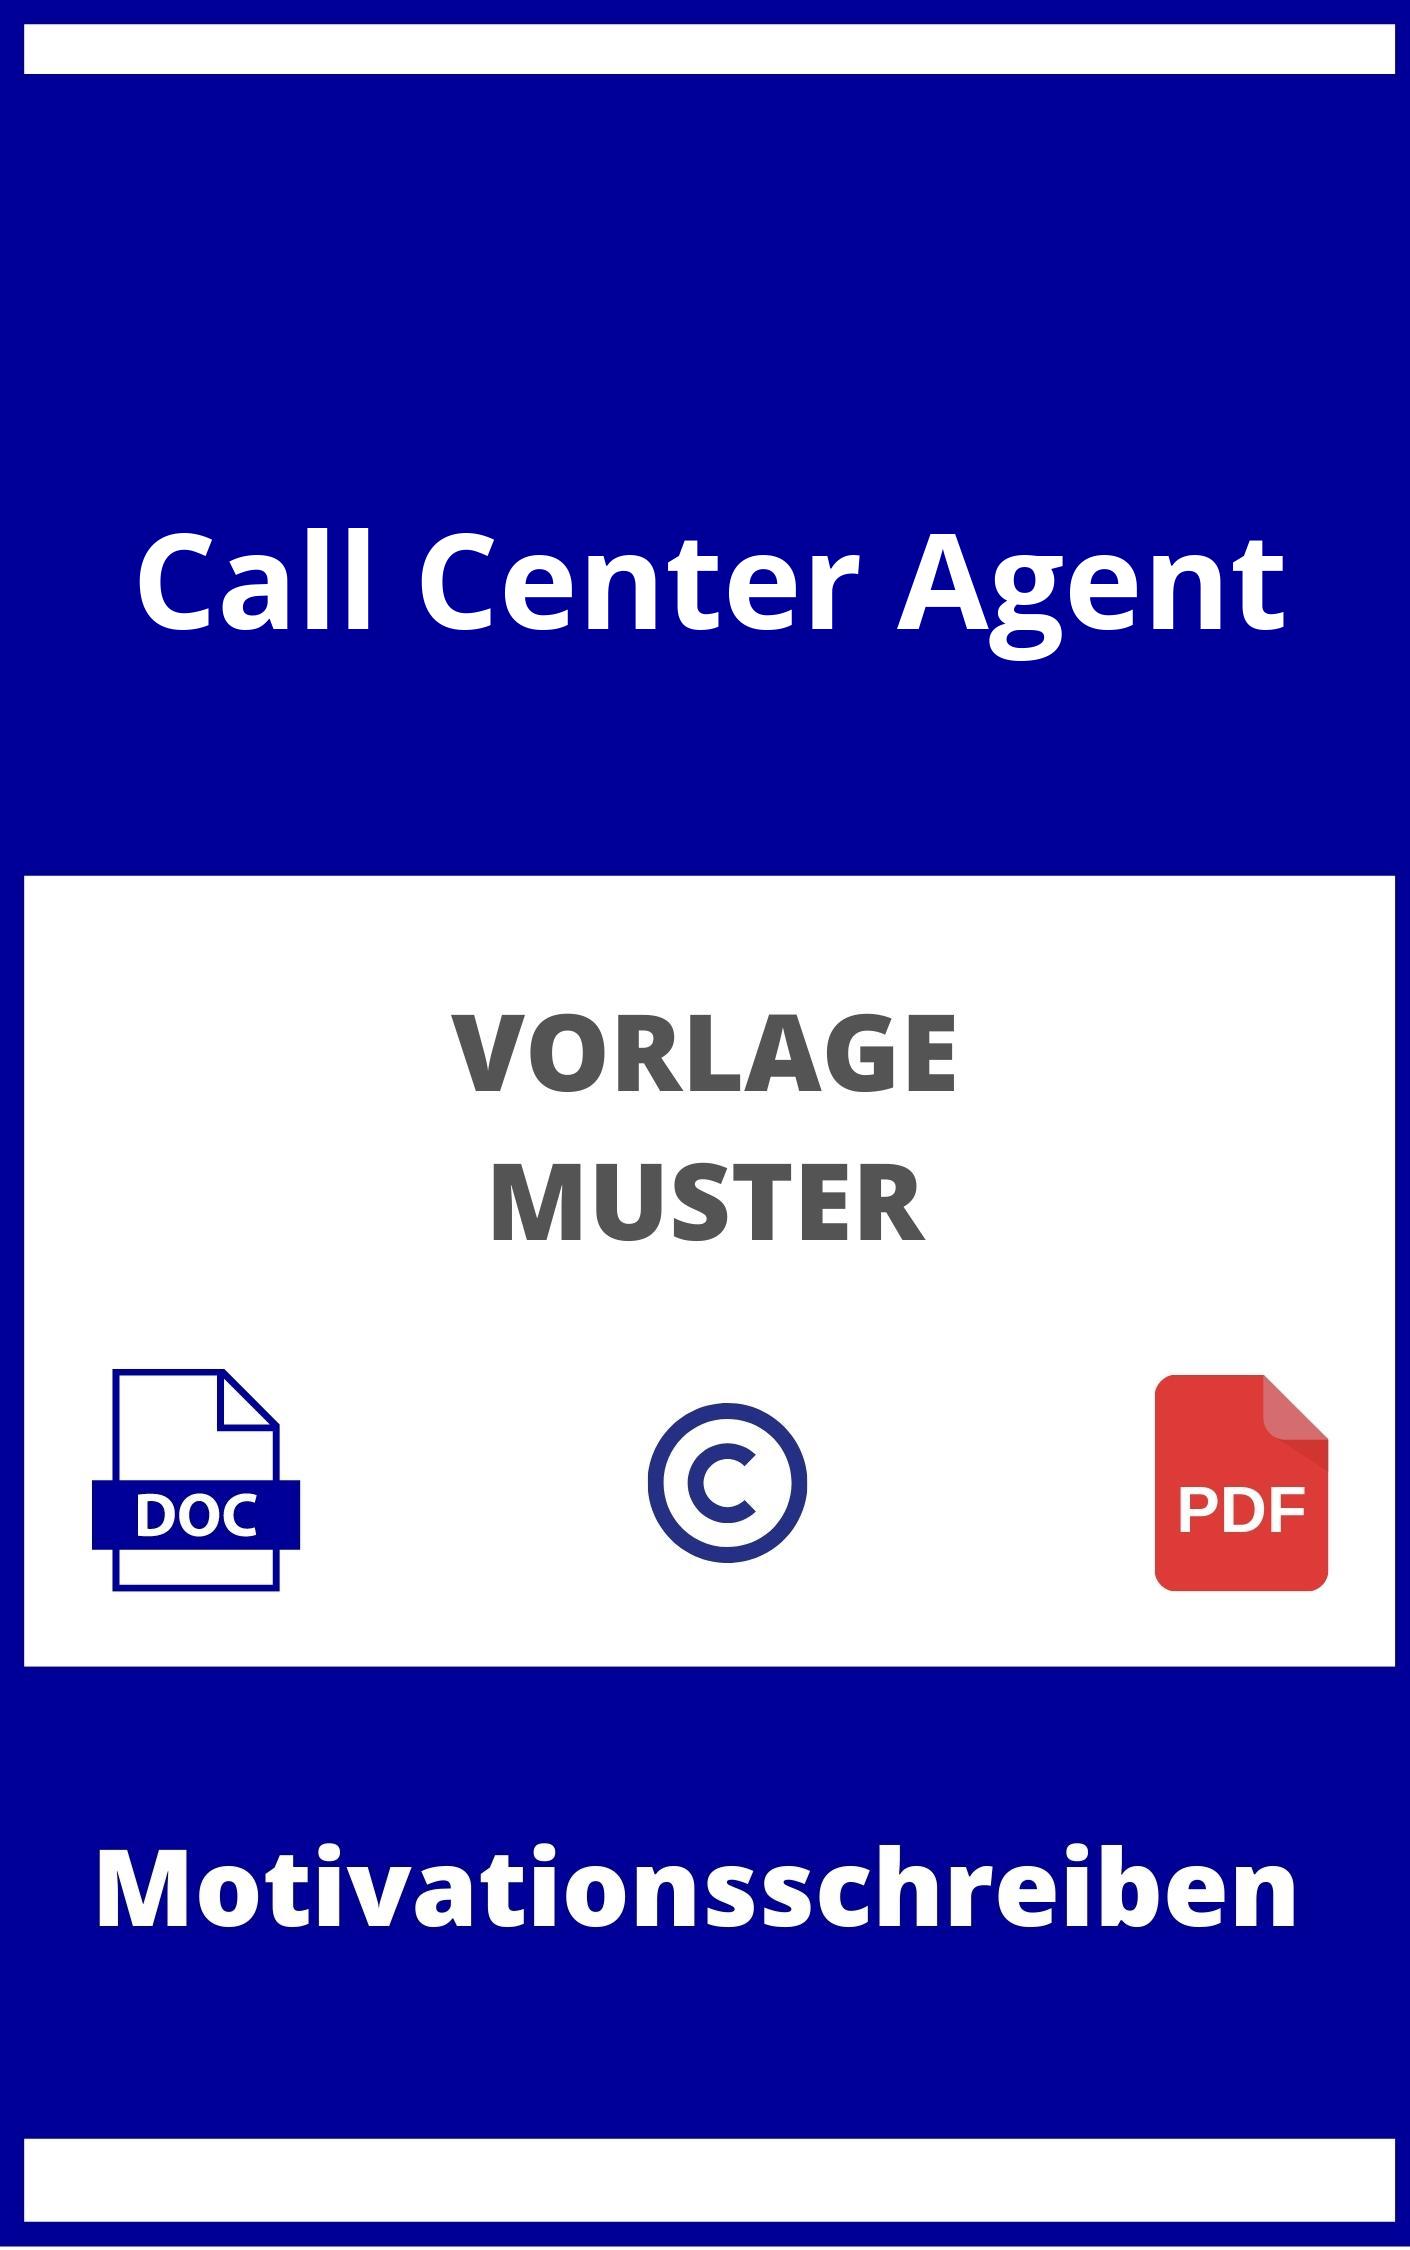 Motivationsschreiben Call Center Agent